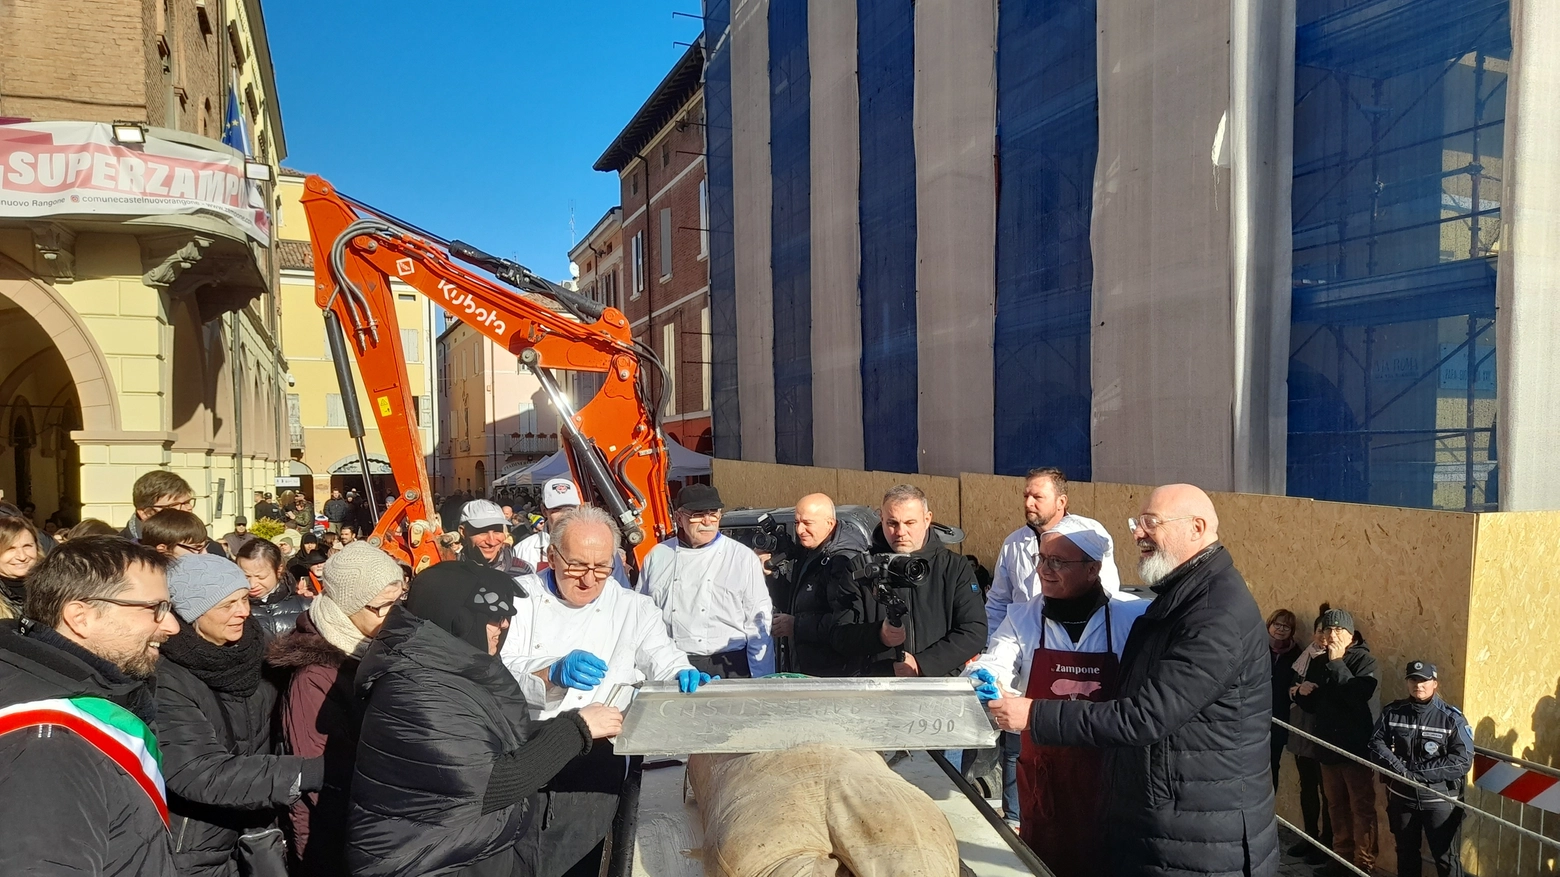 Castelnuovo, come tradizione l’insaccato da 320 chili è stato tagliato e distribuito a tutti i presenti. Il sindaco: "Omaggio ai nostri artigiani della carne diventati protagonisti nel mondo dell’agroalimentare".